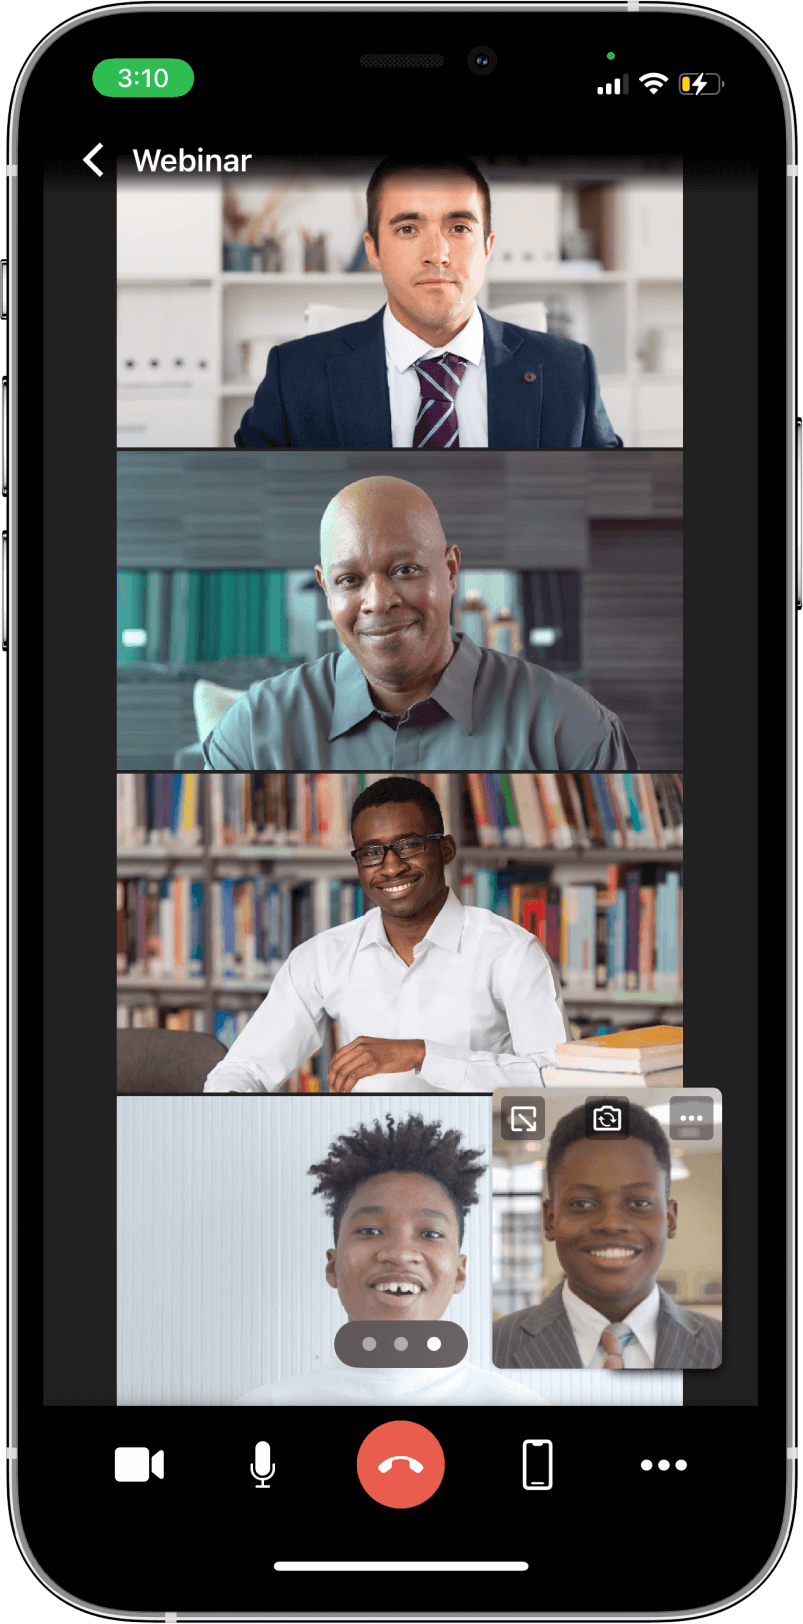 TrueConf 3.3 para iOS: nova interface do usuário, modo de reunião inteligente, acesso offline a chats, contatos e histórico de chamadas 10